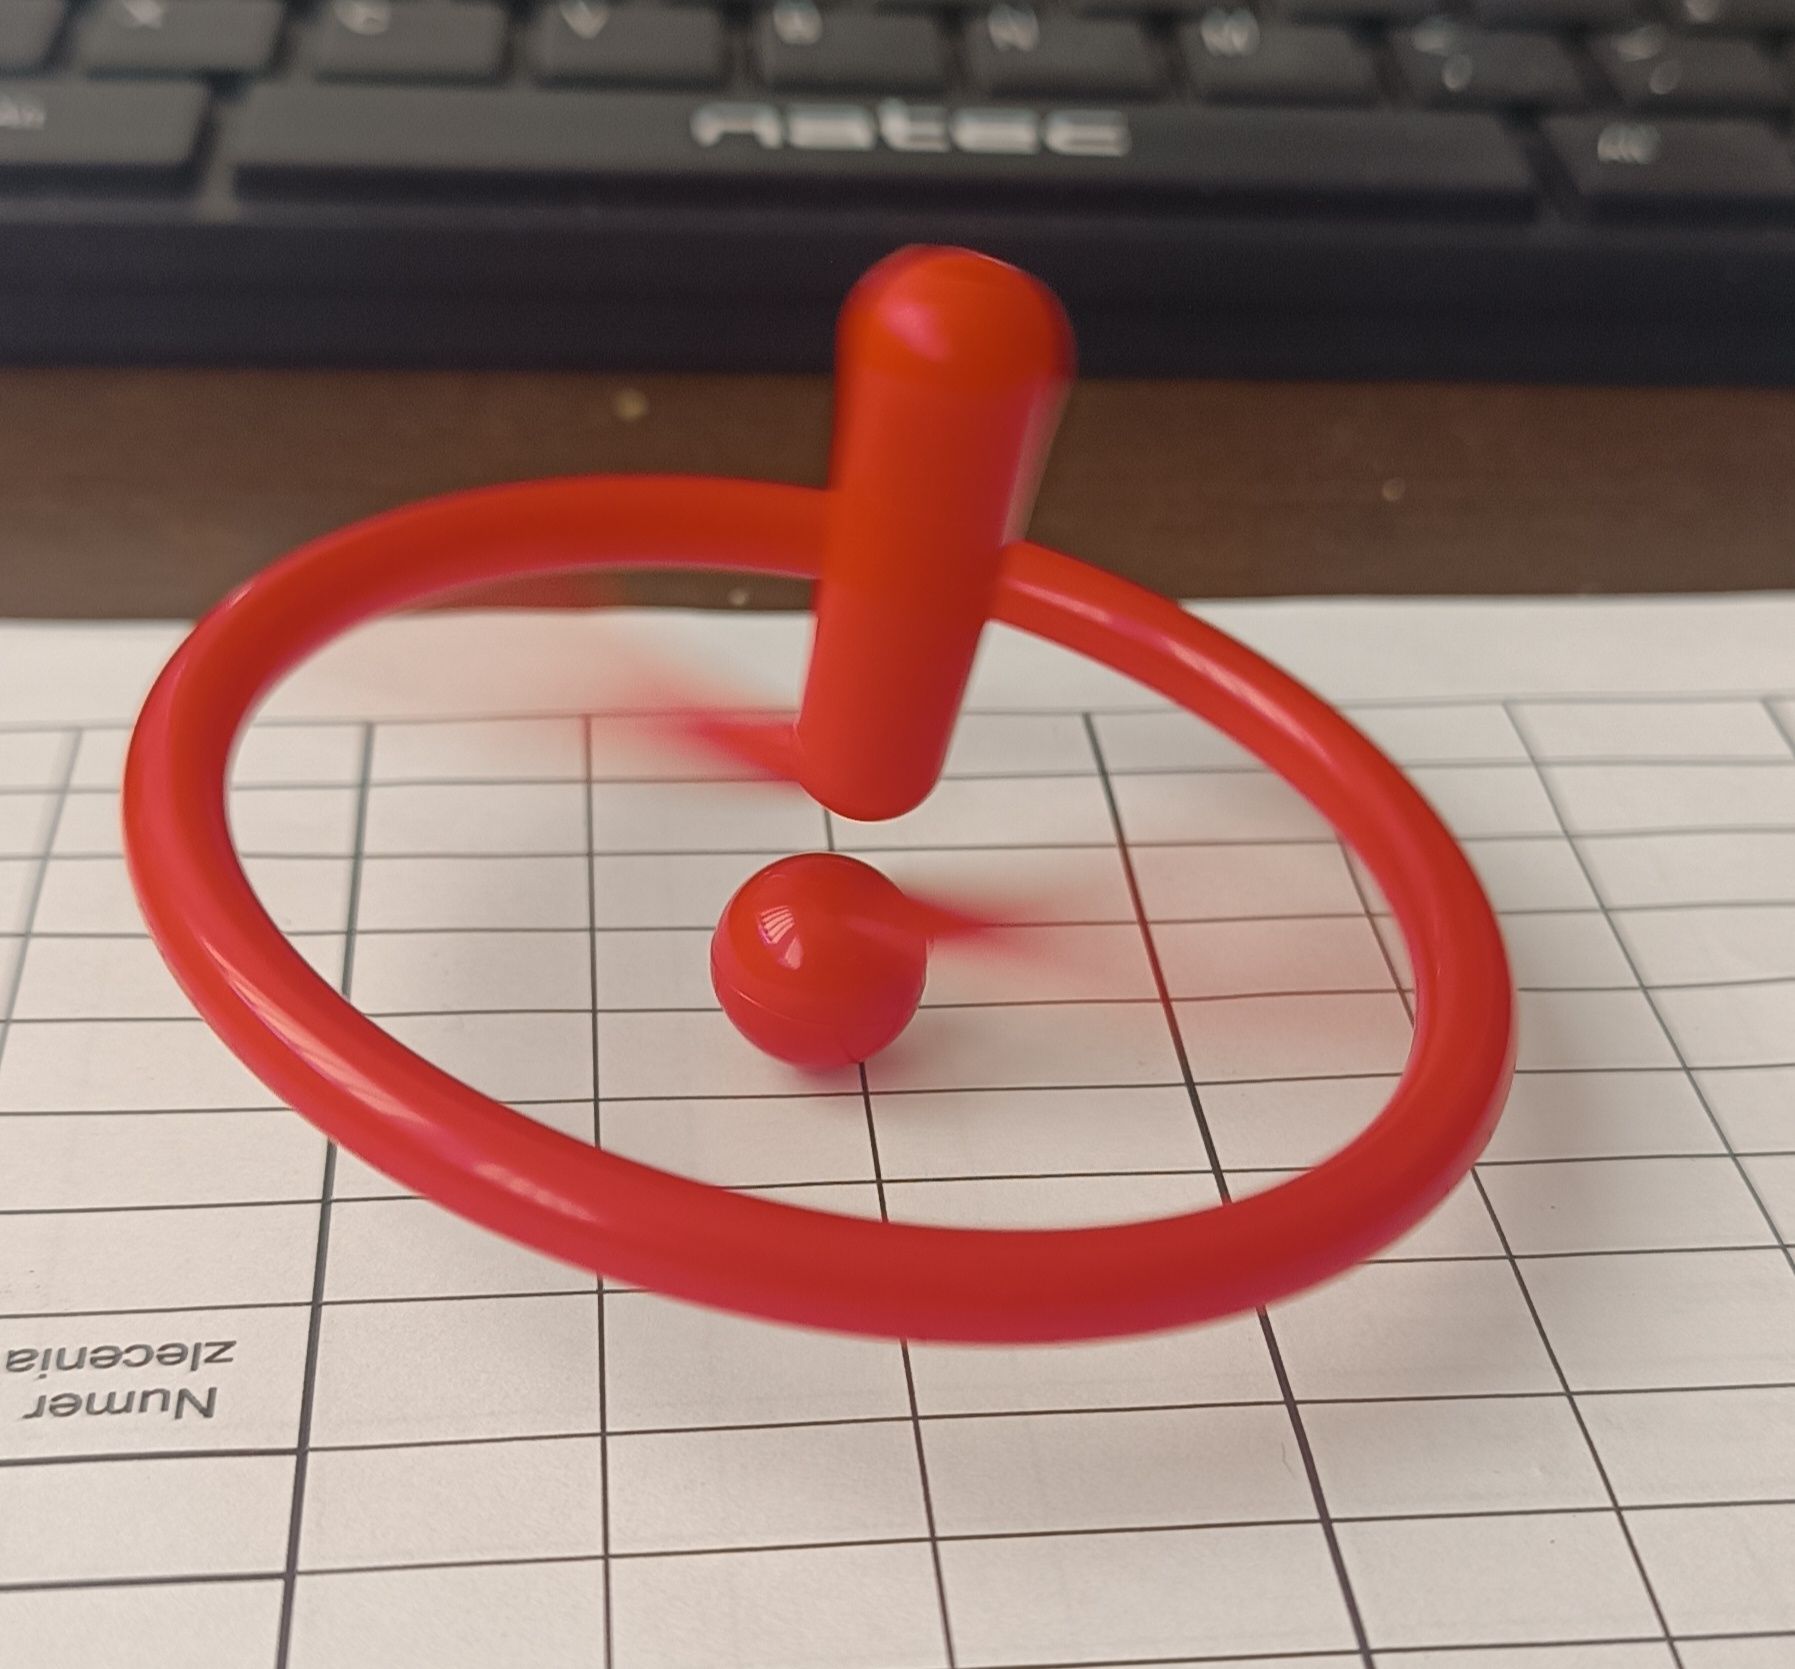 Nowy bączek fidget spinner żyroskop zabawka